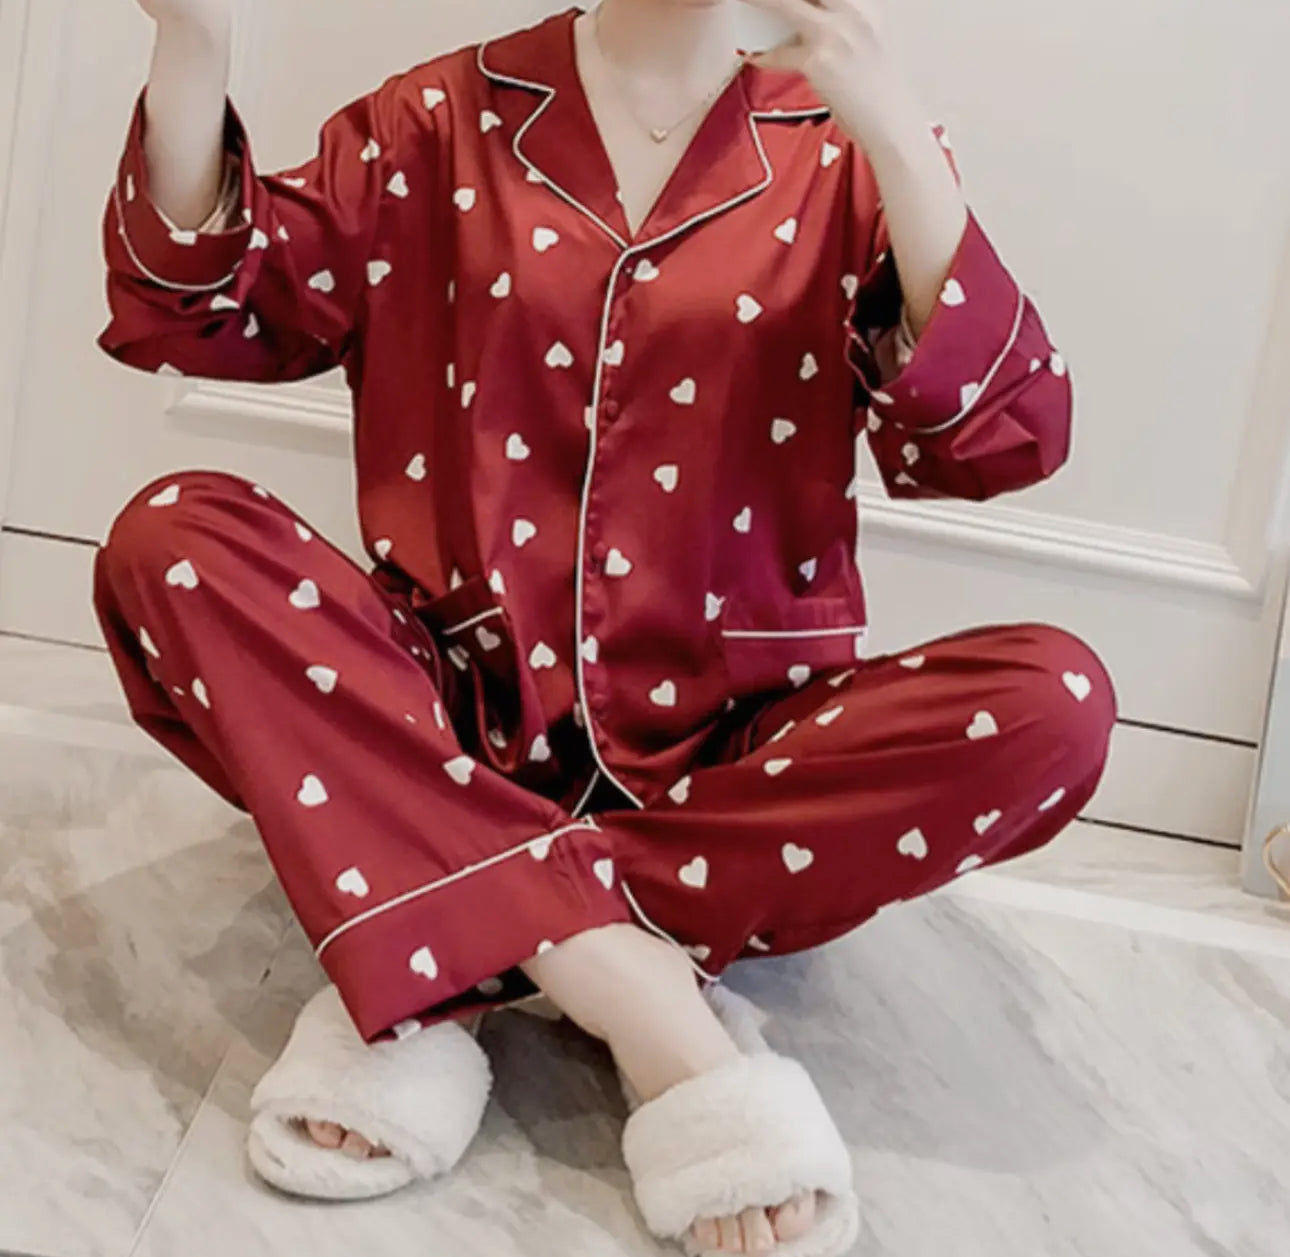 Be My Valentine Pajamas